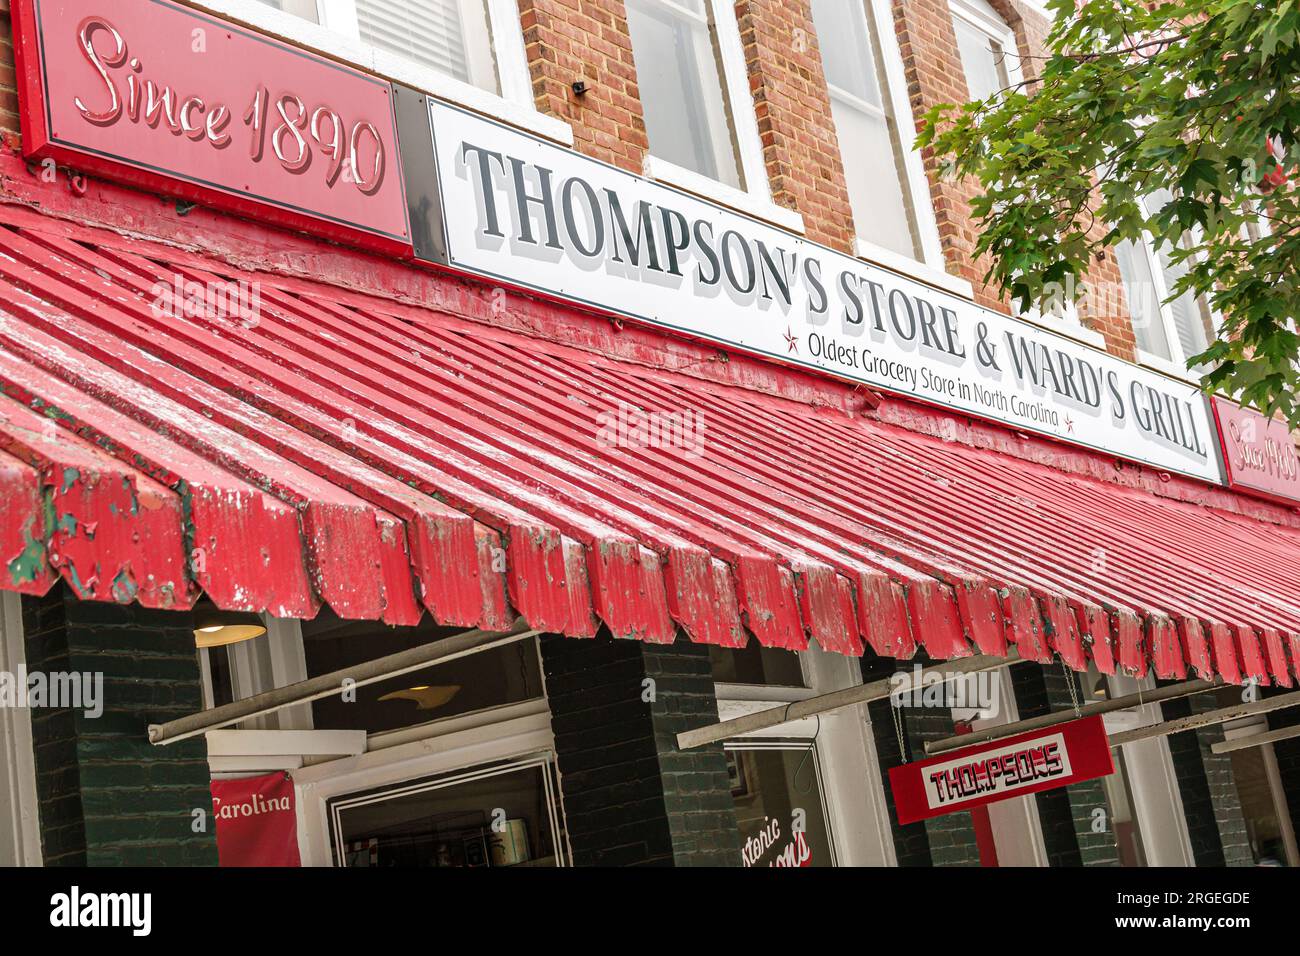 Saluda North Carolina, ältester Lebensmittelladen im Bundesstaat, Thompson's Store, Außenansicht, Eingang des Gebäudes, Geschäft Geschäft Geschäft Geschäft Geschäft Geschäft Handelsmarkt Mark Stockfoto